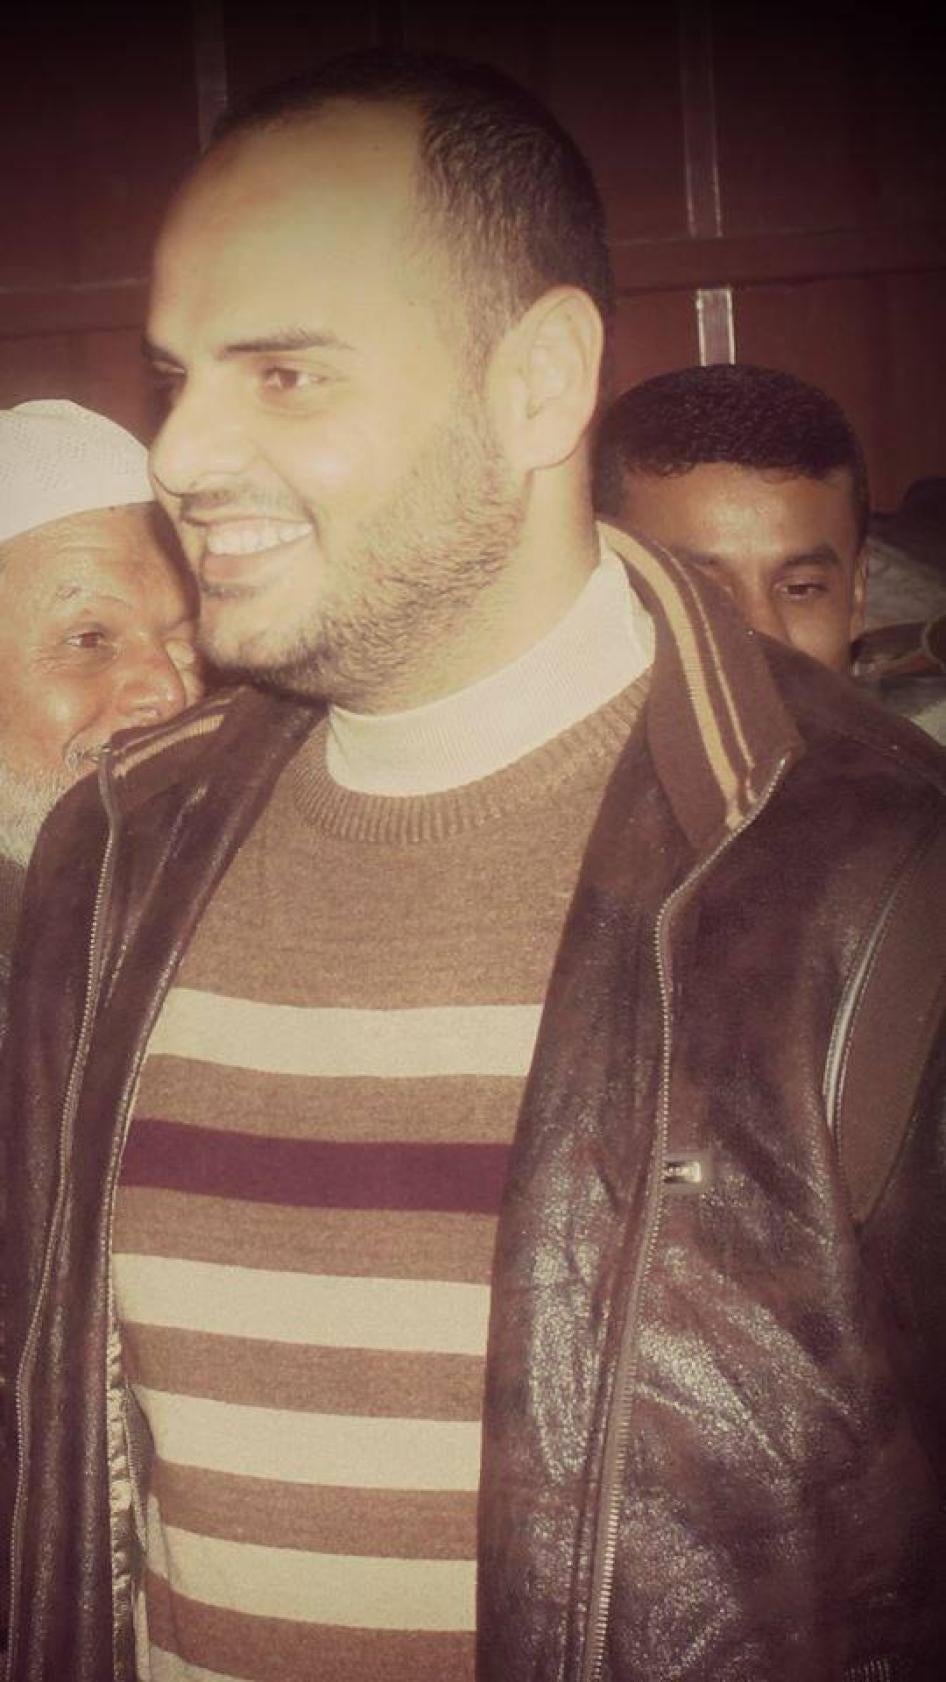 محمود اشتيوي قبل احتجازه؛ غير مؤرخ (قدمت الصورة من قبل عائلته)